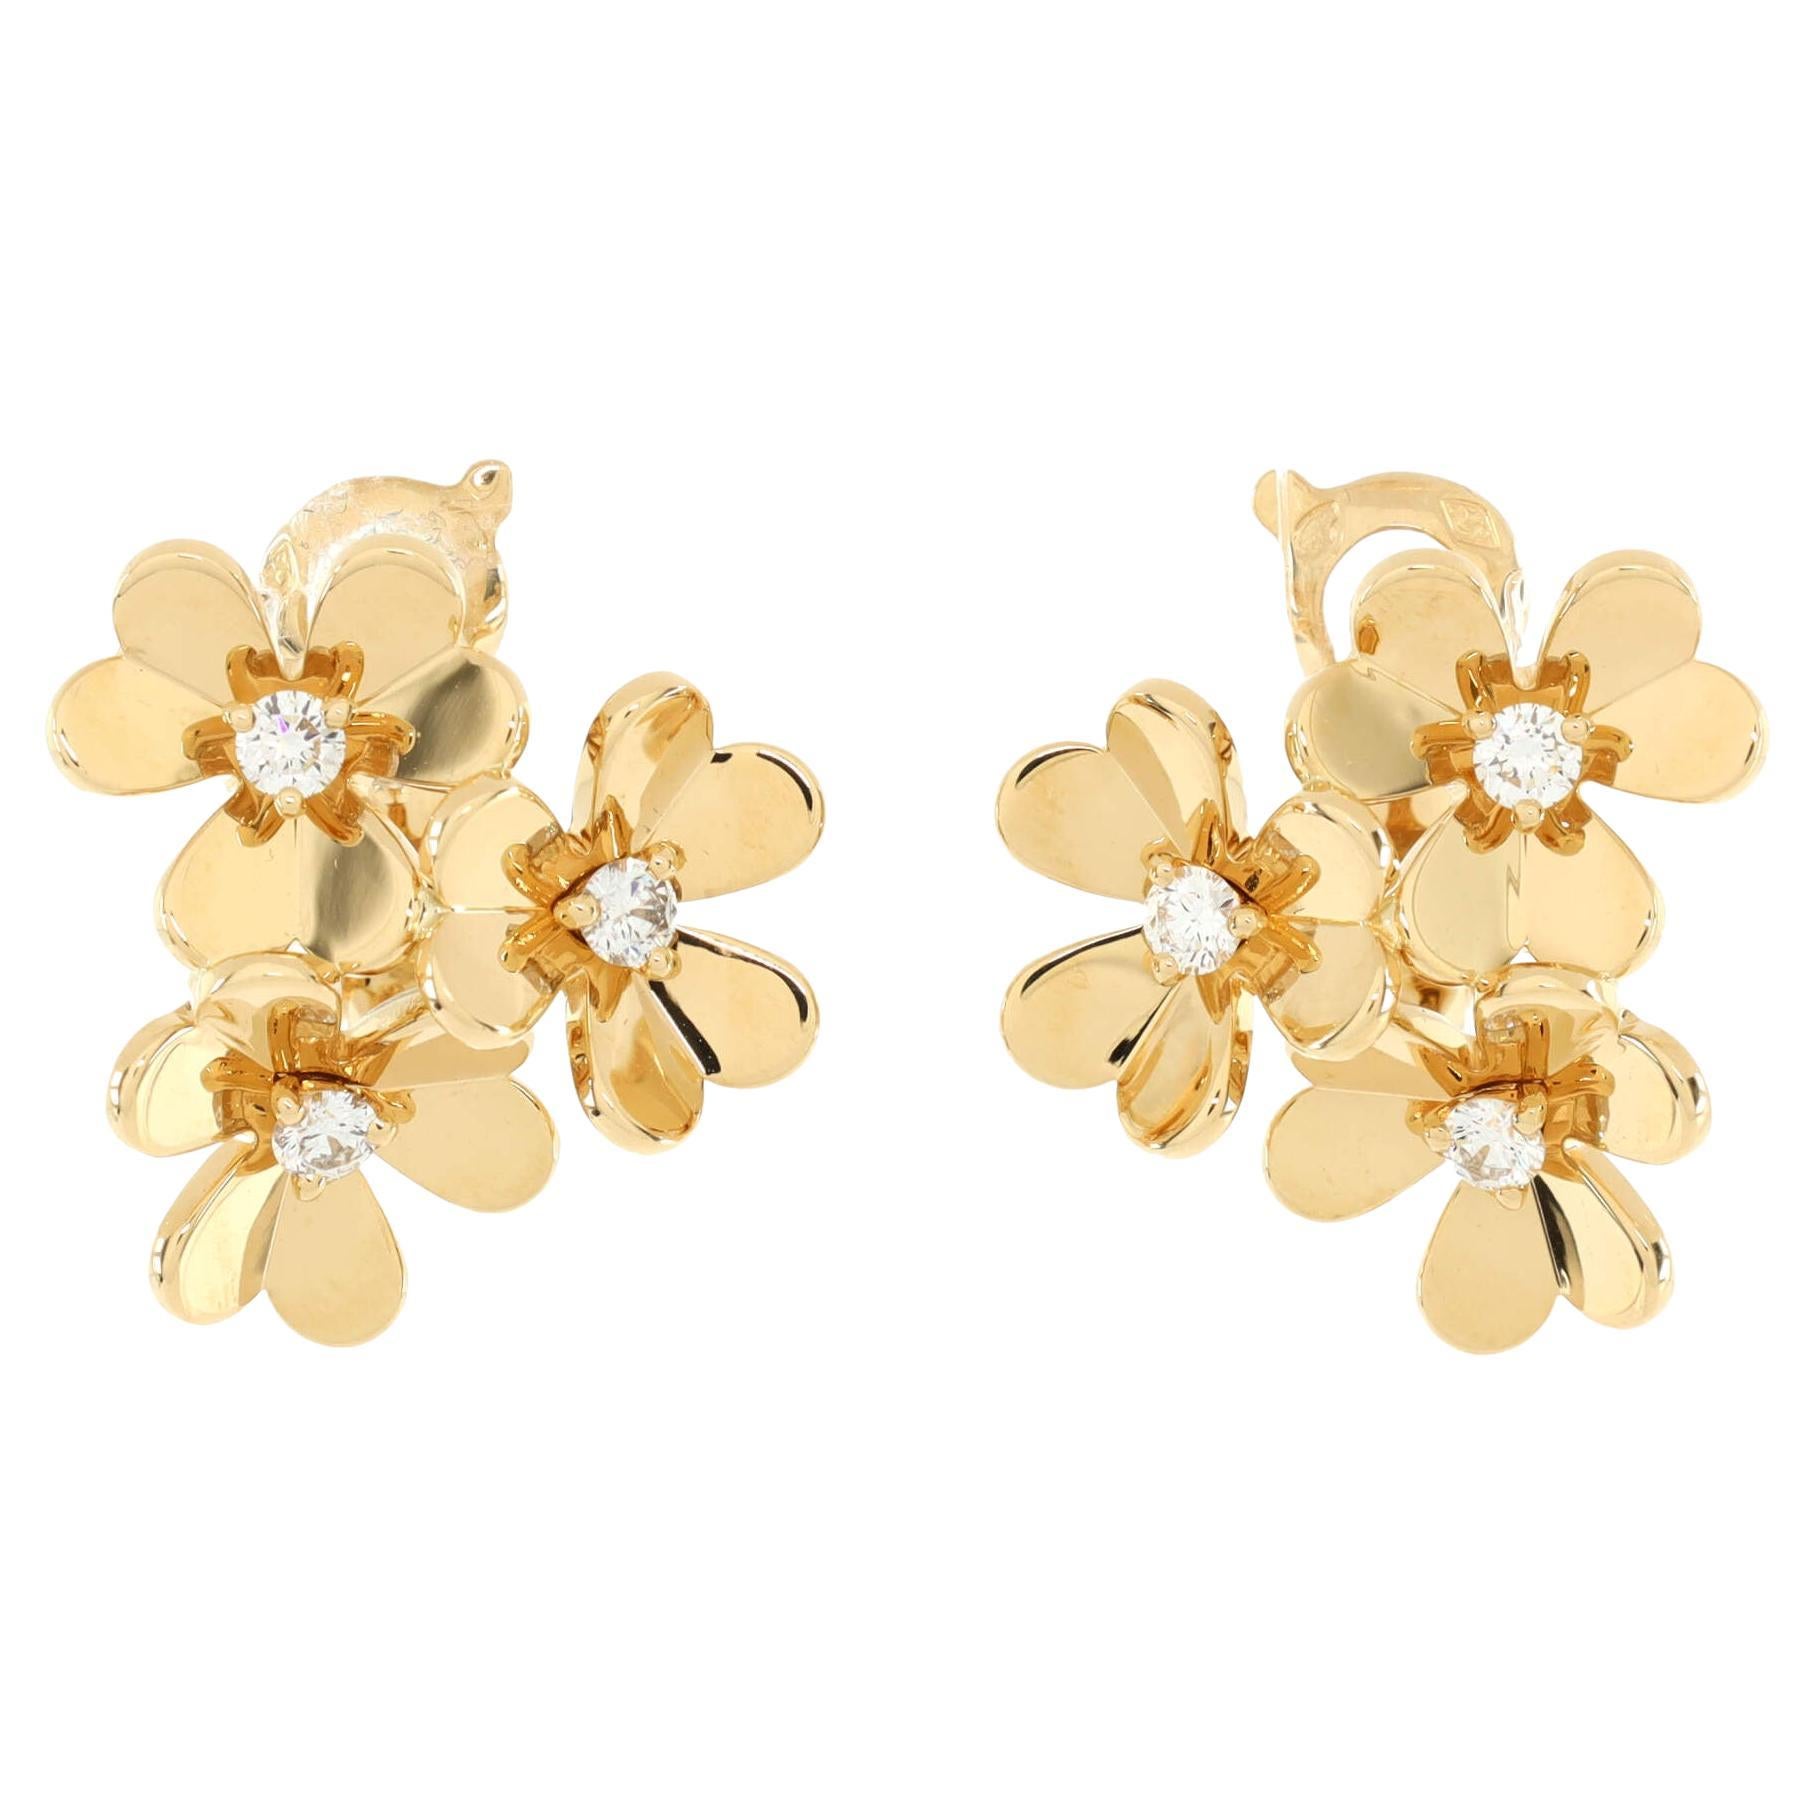 Van Cleef & Arpels Frivole 3 Motif Stud Earrings 18k Yellow Gold with Diamonds 